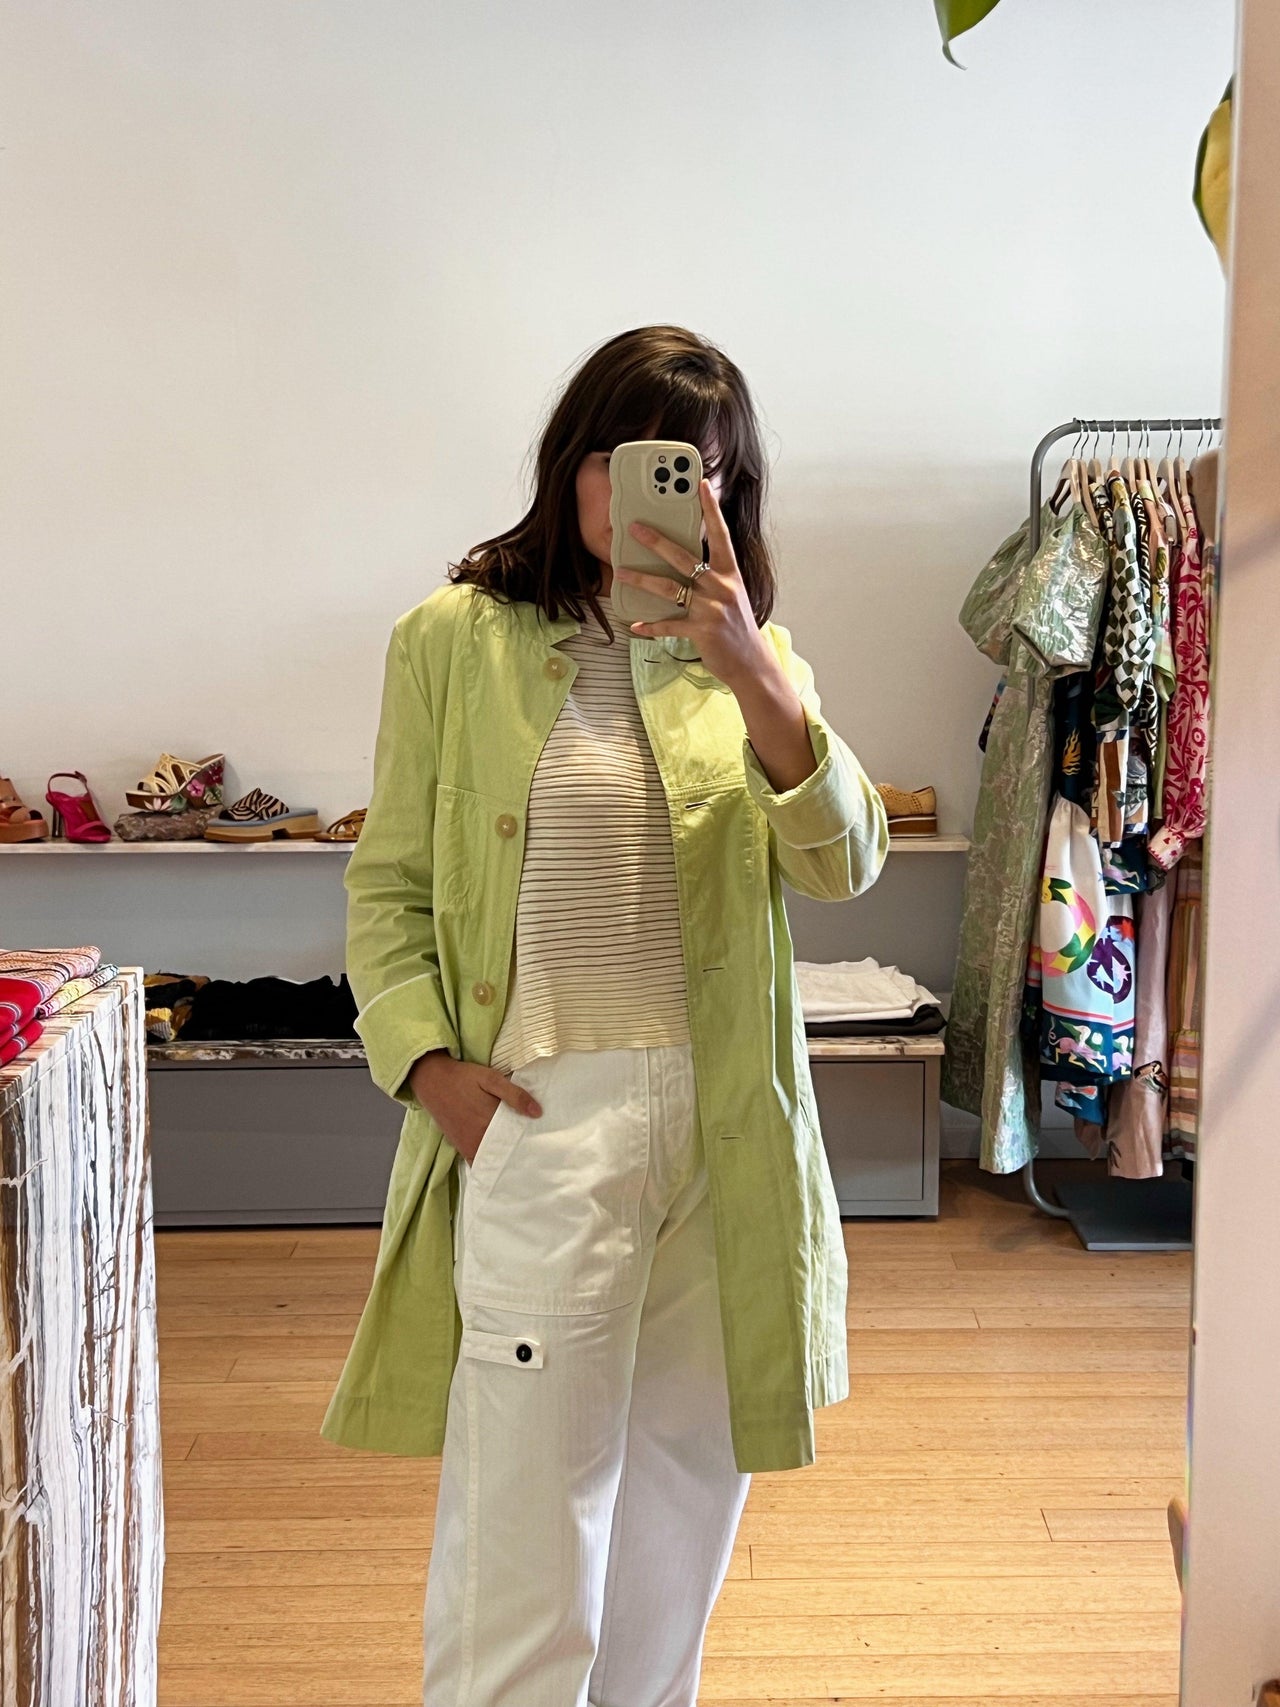 Bessy Jacket in Lime-Jacket-Annette Gortz-Debs Boutique